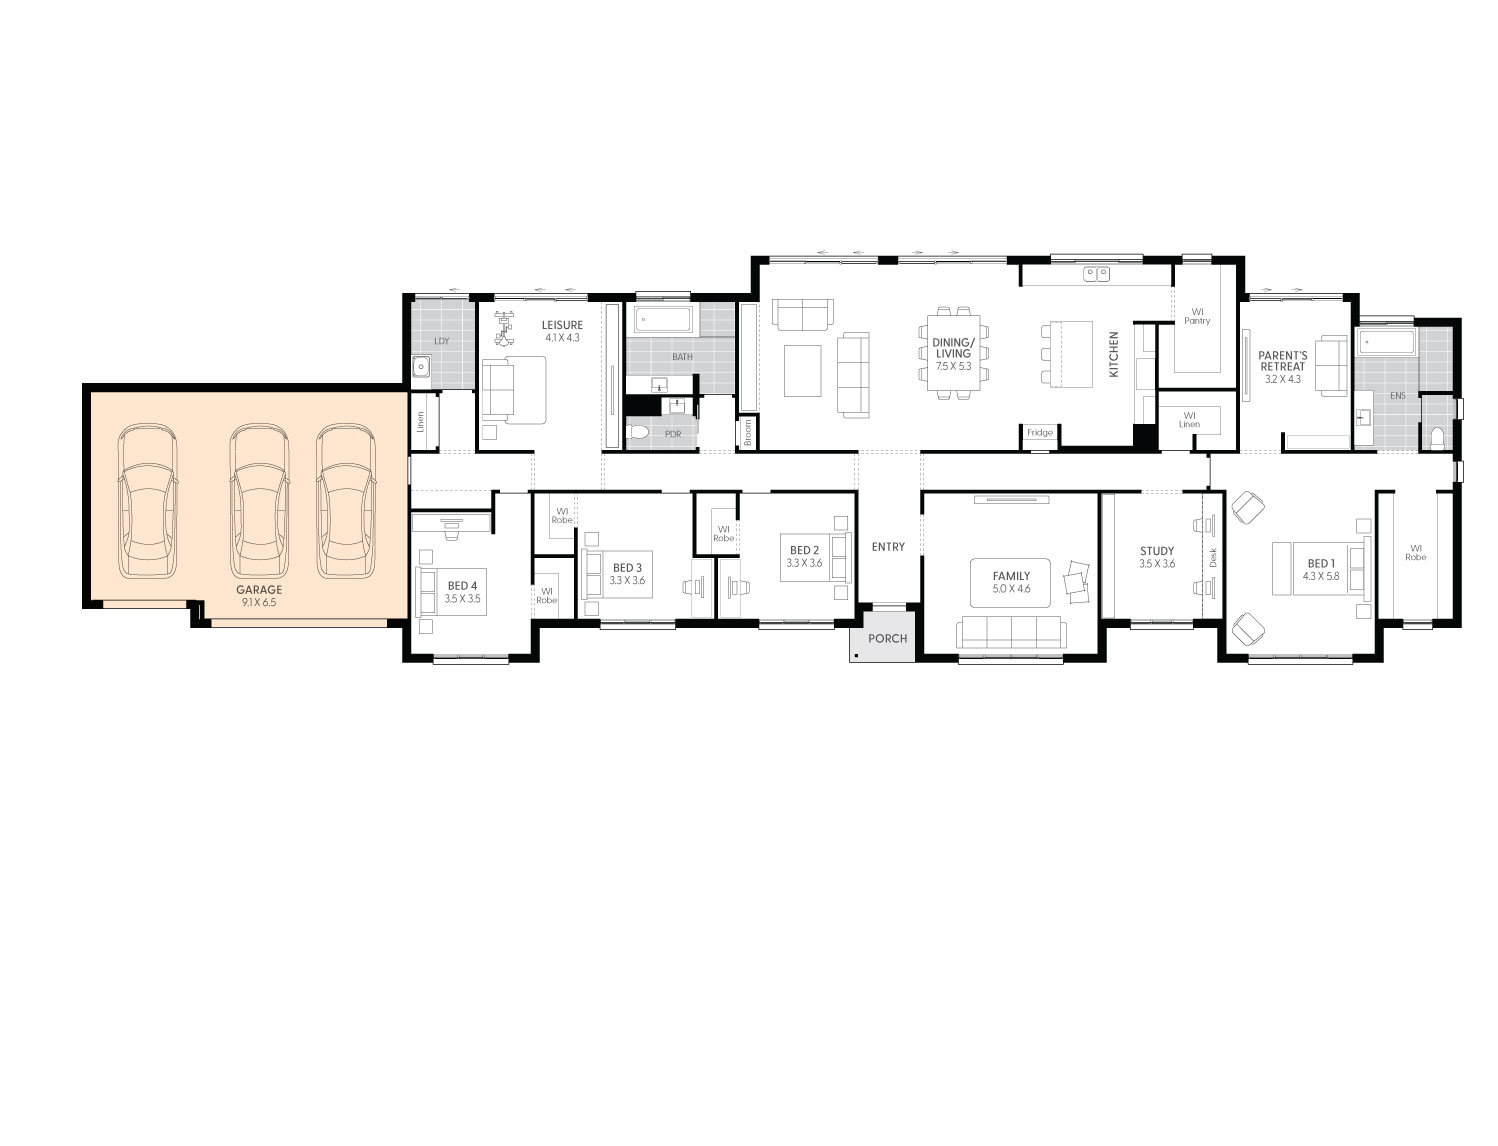 Sanford-39-floor-plan-THIRD-GARAGE-OPTION-LHS_0.jpg 